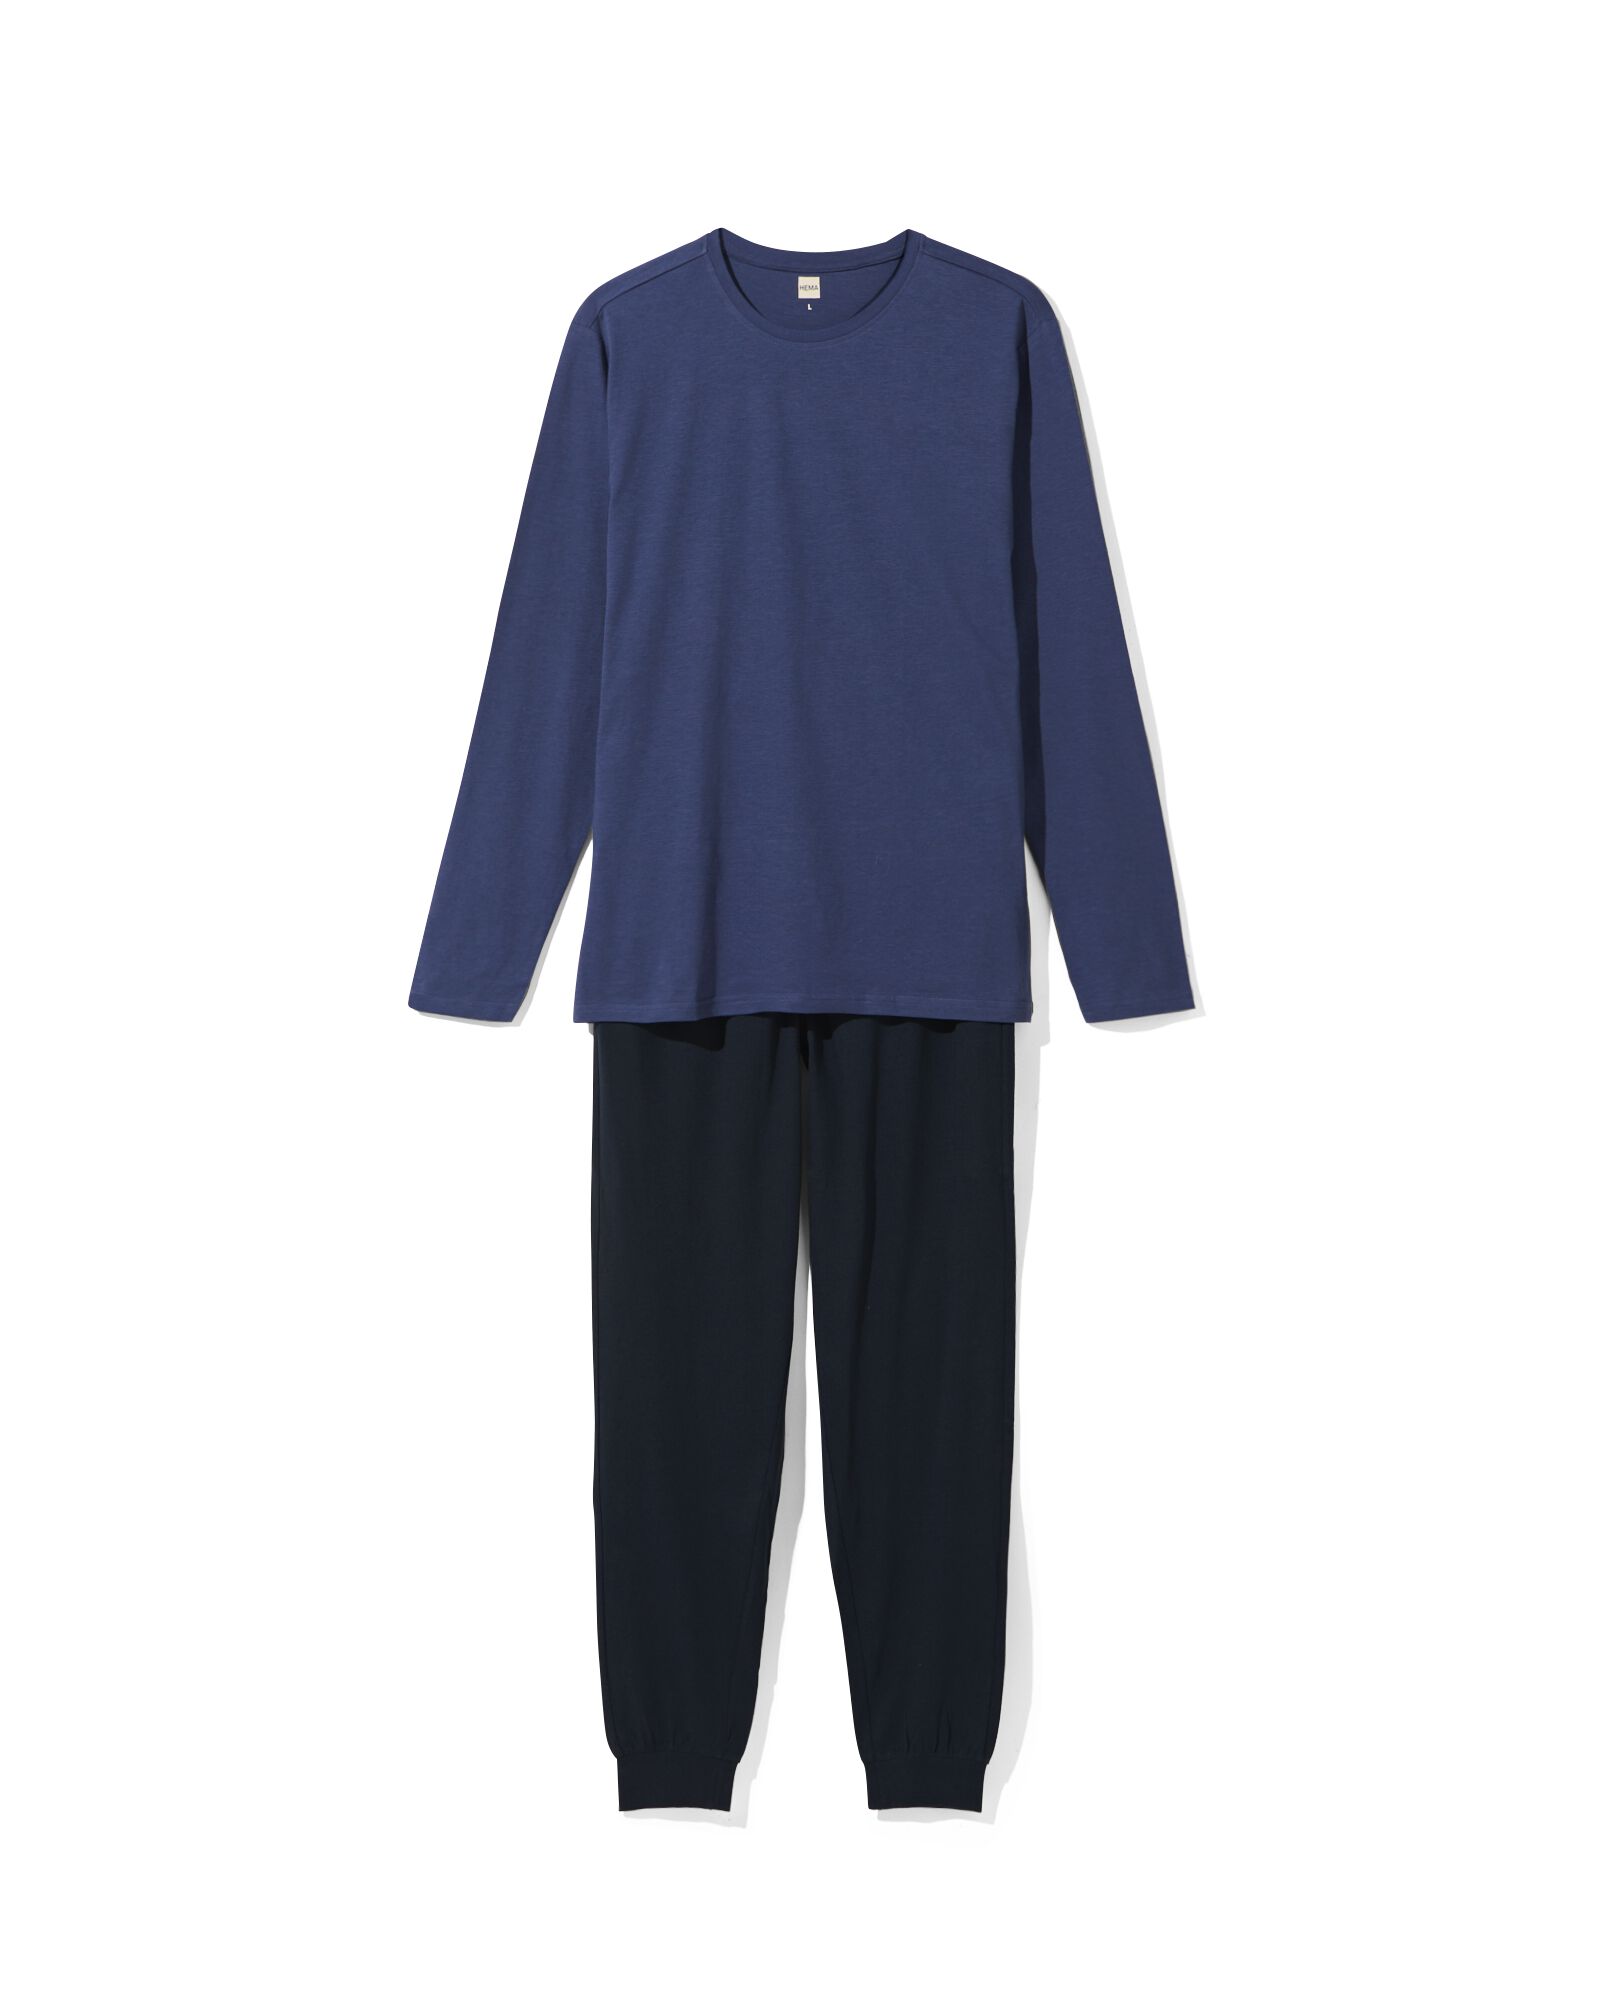 Herren-Pyjama, Baumwolle dunkelblau dunkelblau - 23682540DARKBLUE - HEMA